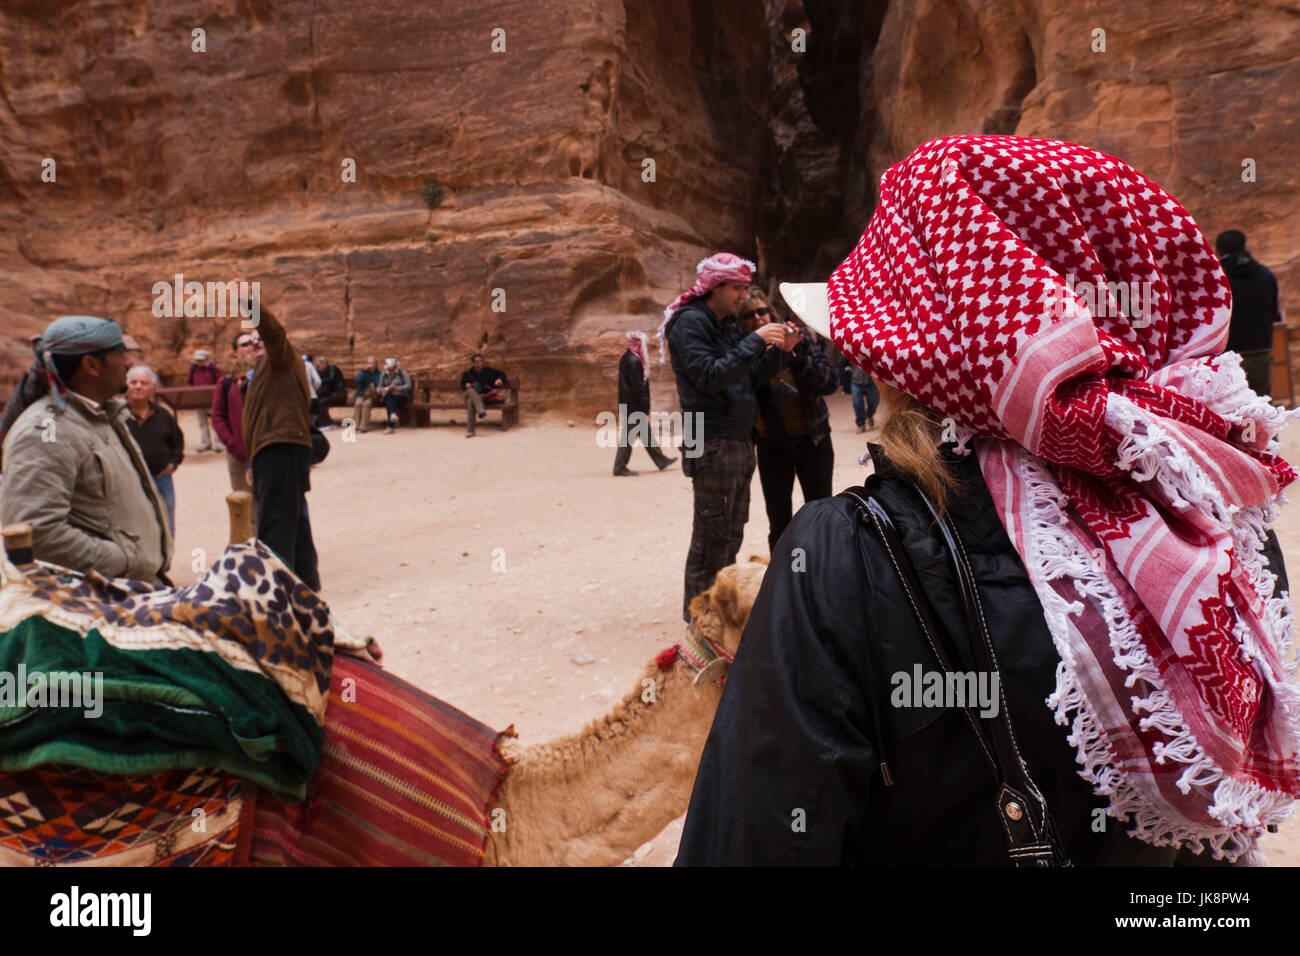 Jordanian woman hi-res stock photography and images - Alamy